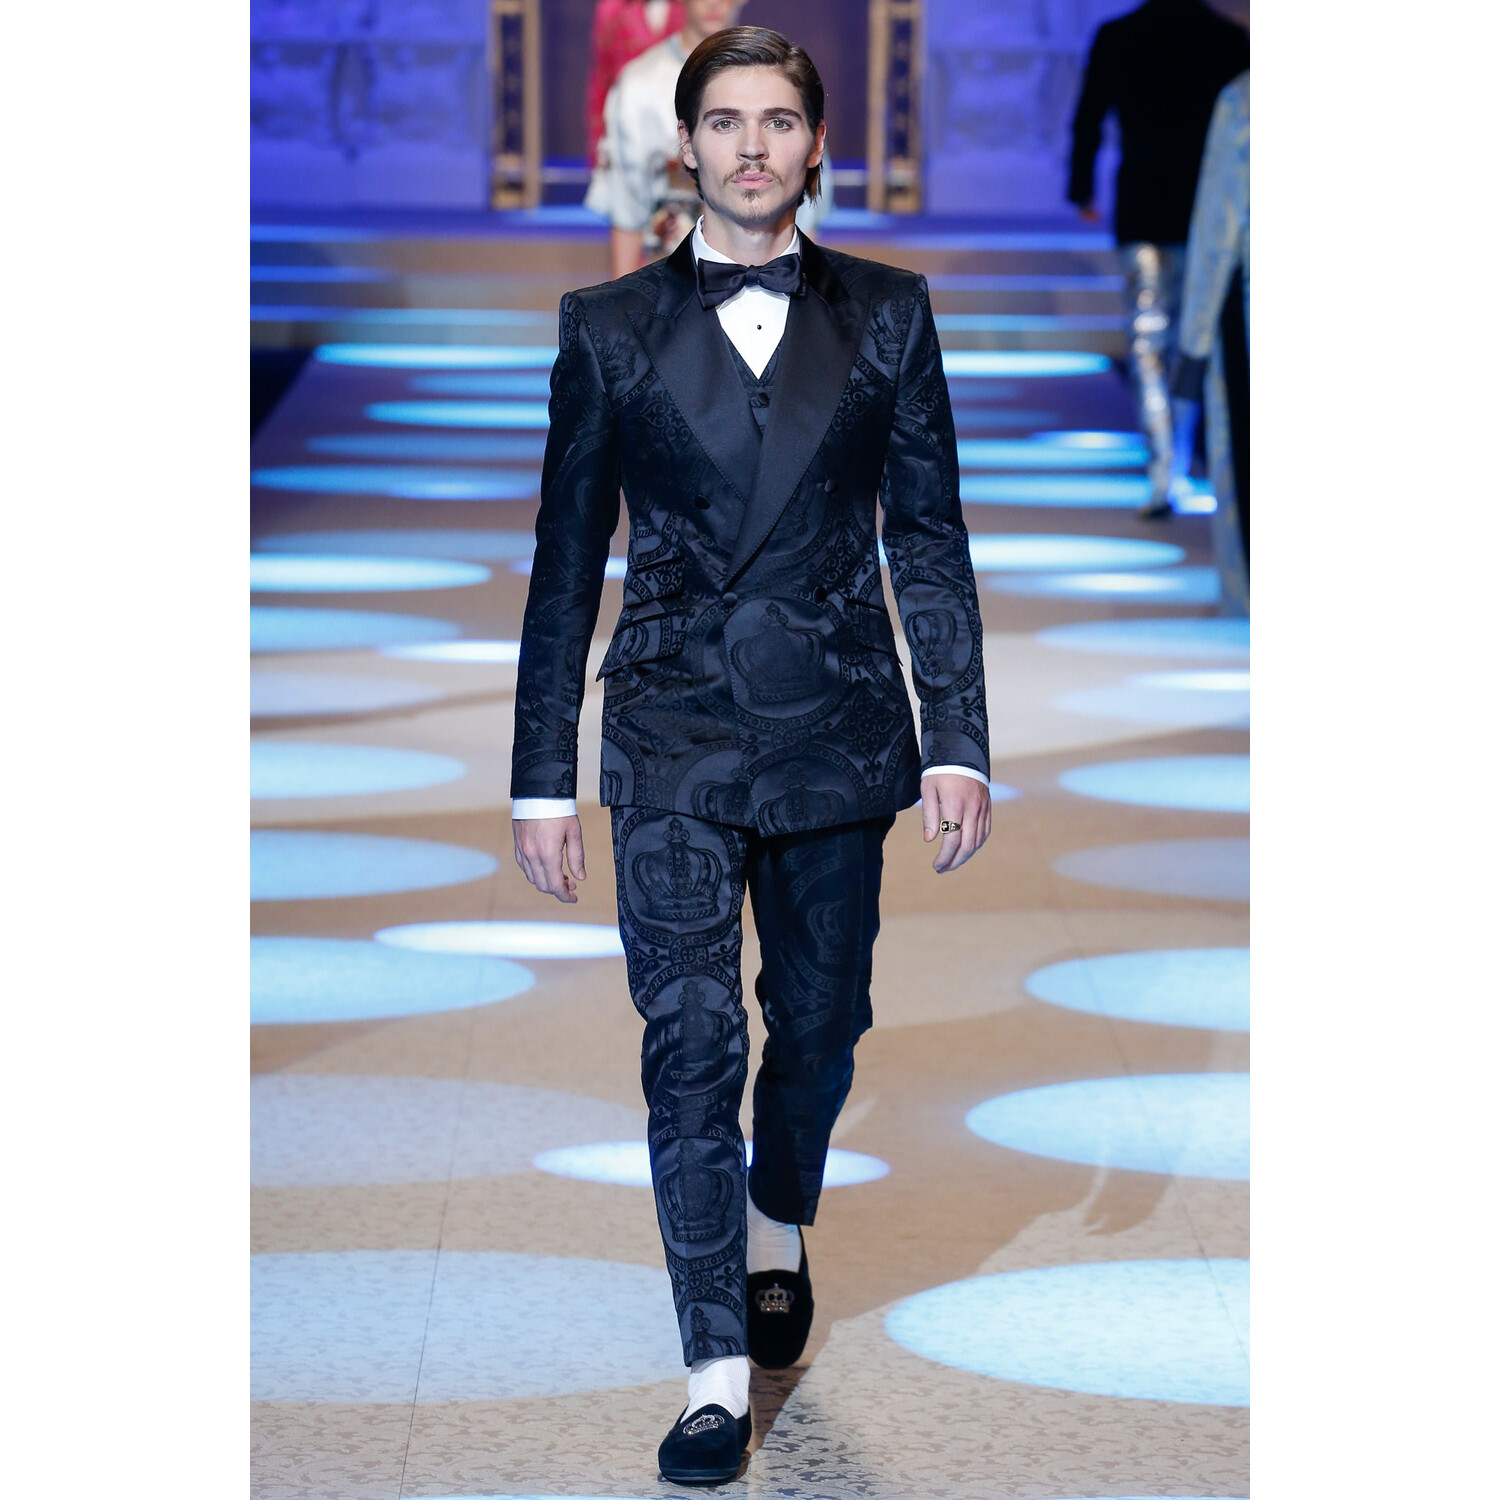 Фото Dolce & Gabbana FALL 2018 MENSWEAR Milan MFW коллекция Дорльче Габбана осень 2018 мужская неделя моды в Милане Mainstyles